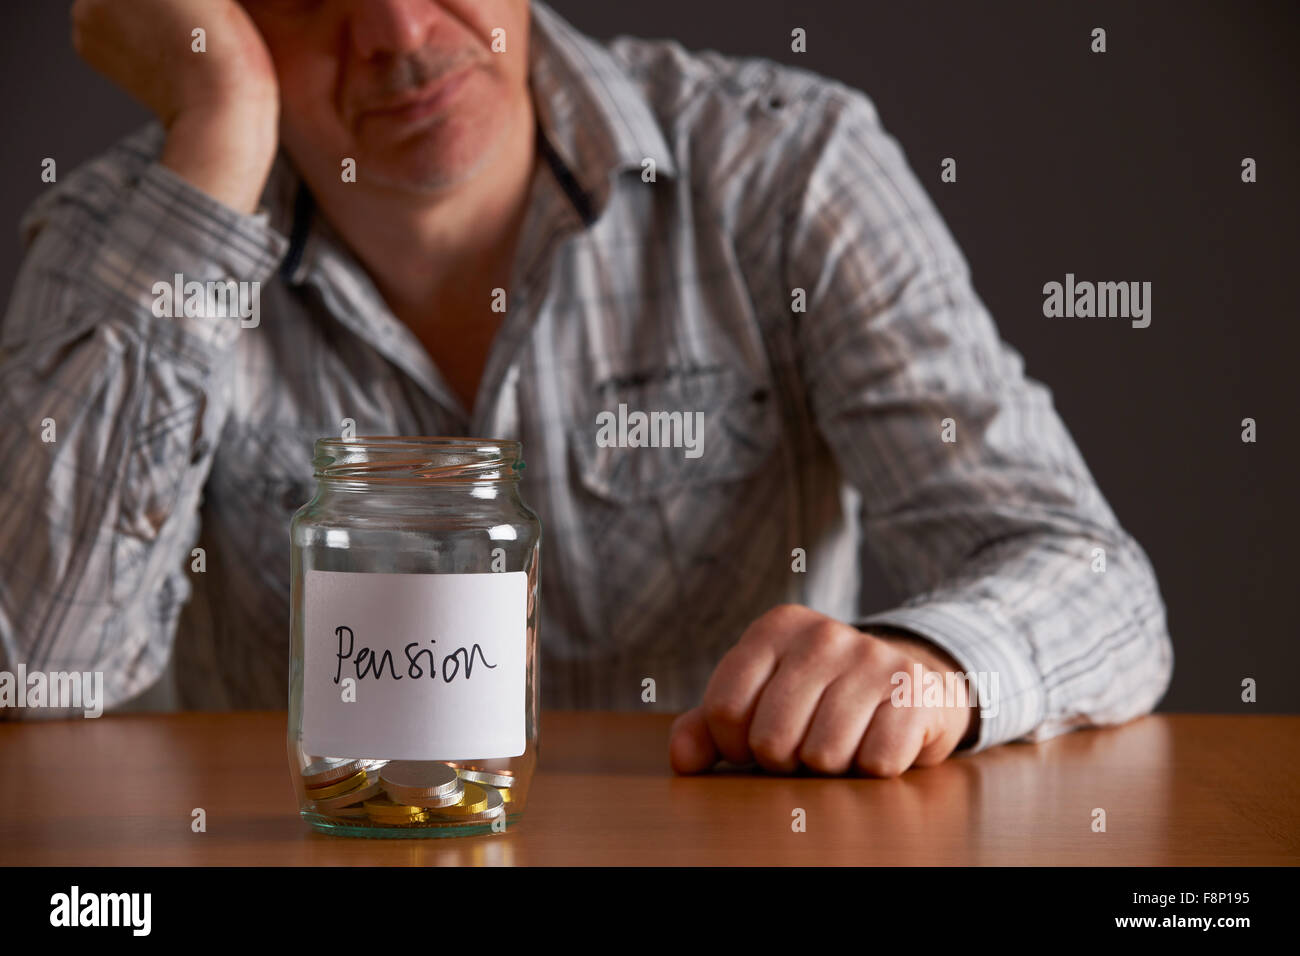 Deprimiert Man Looking At leeres Glas gekennzeichneten Pension Stockfoto